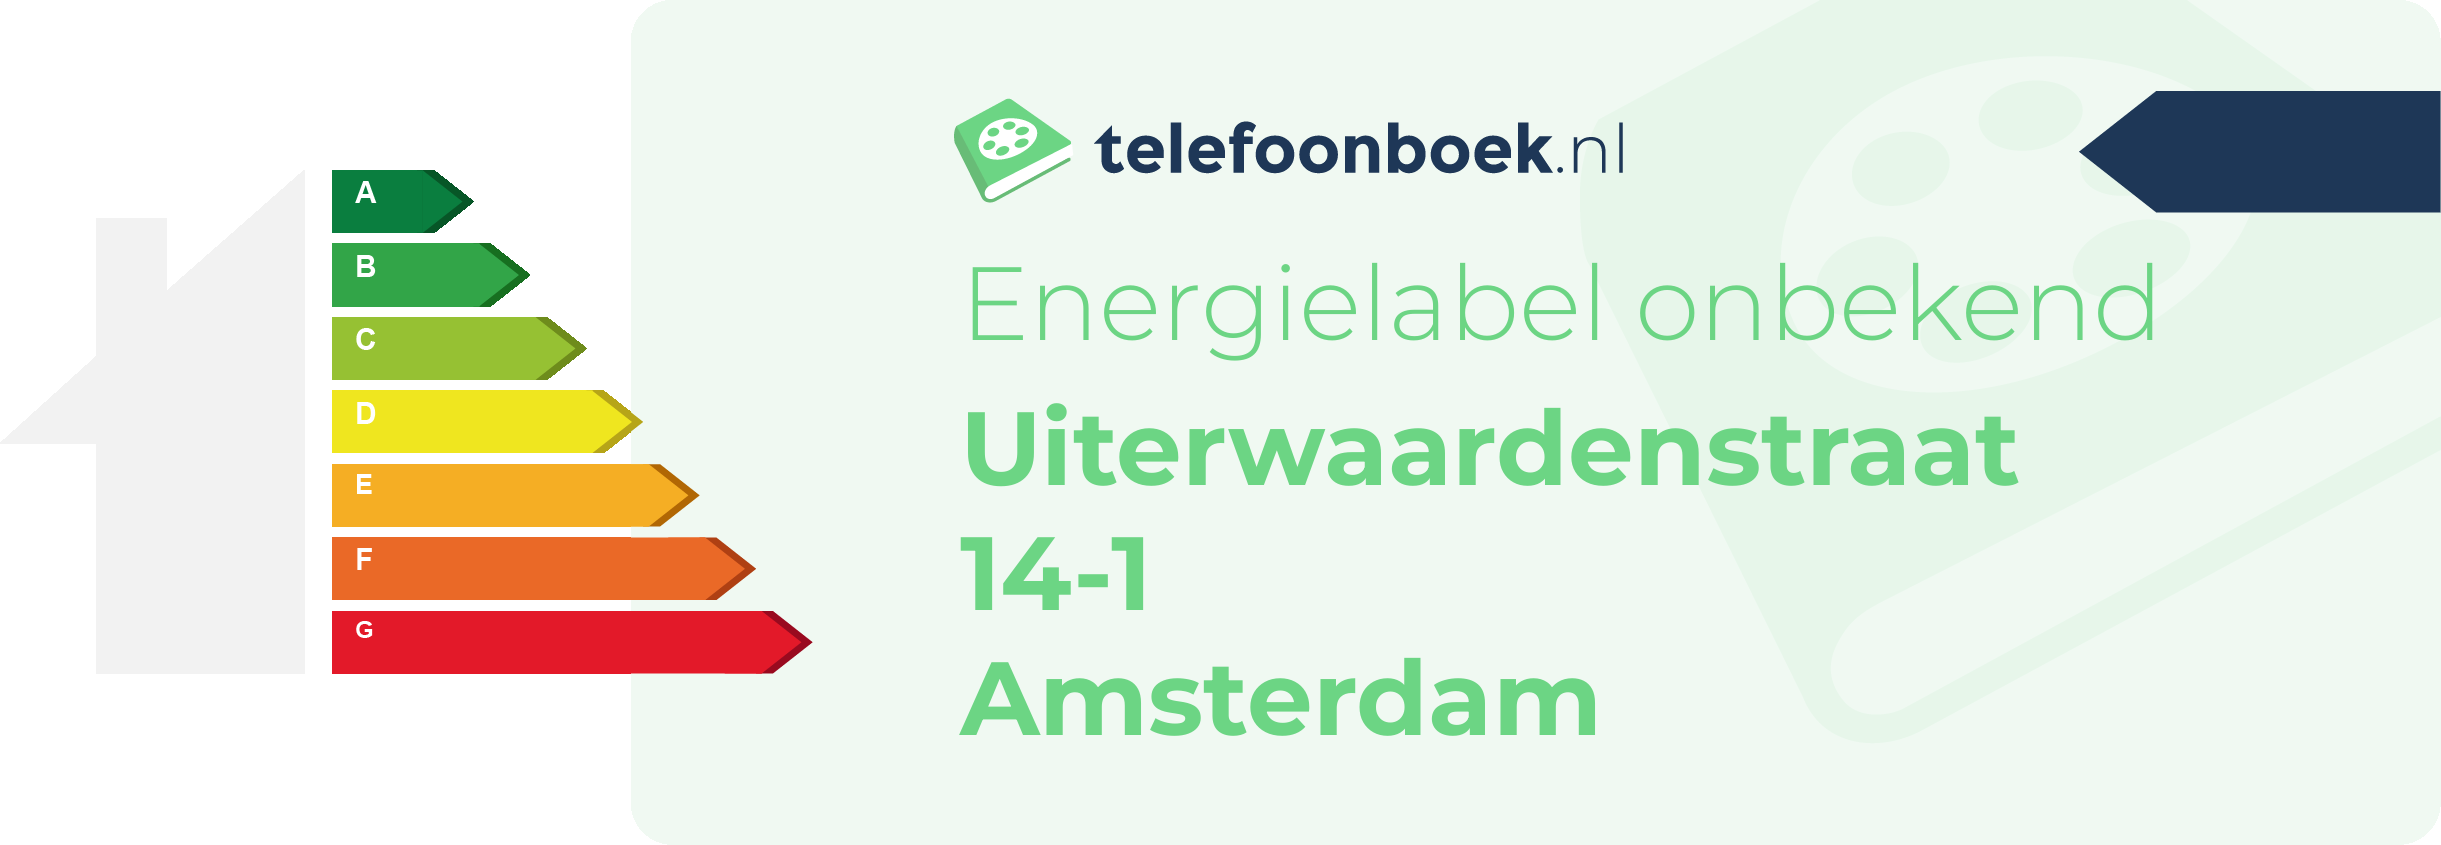 Energielabel Uiterwaardenstraat 14-1 Amsterdam